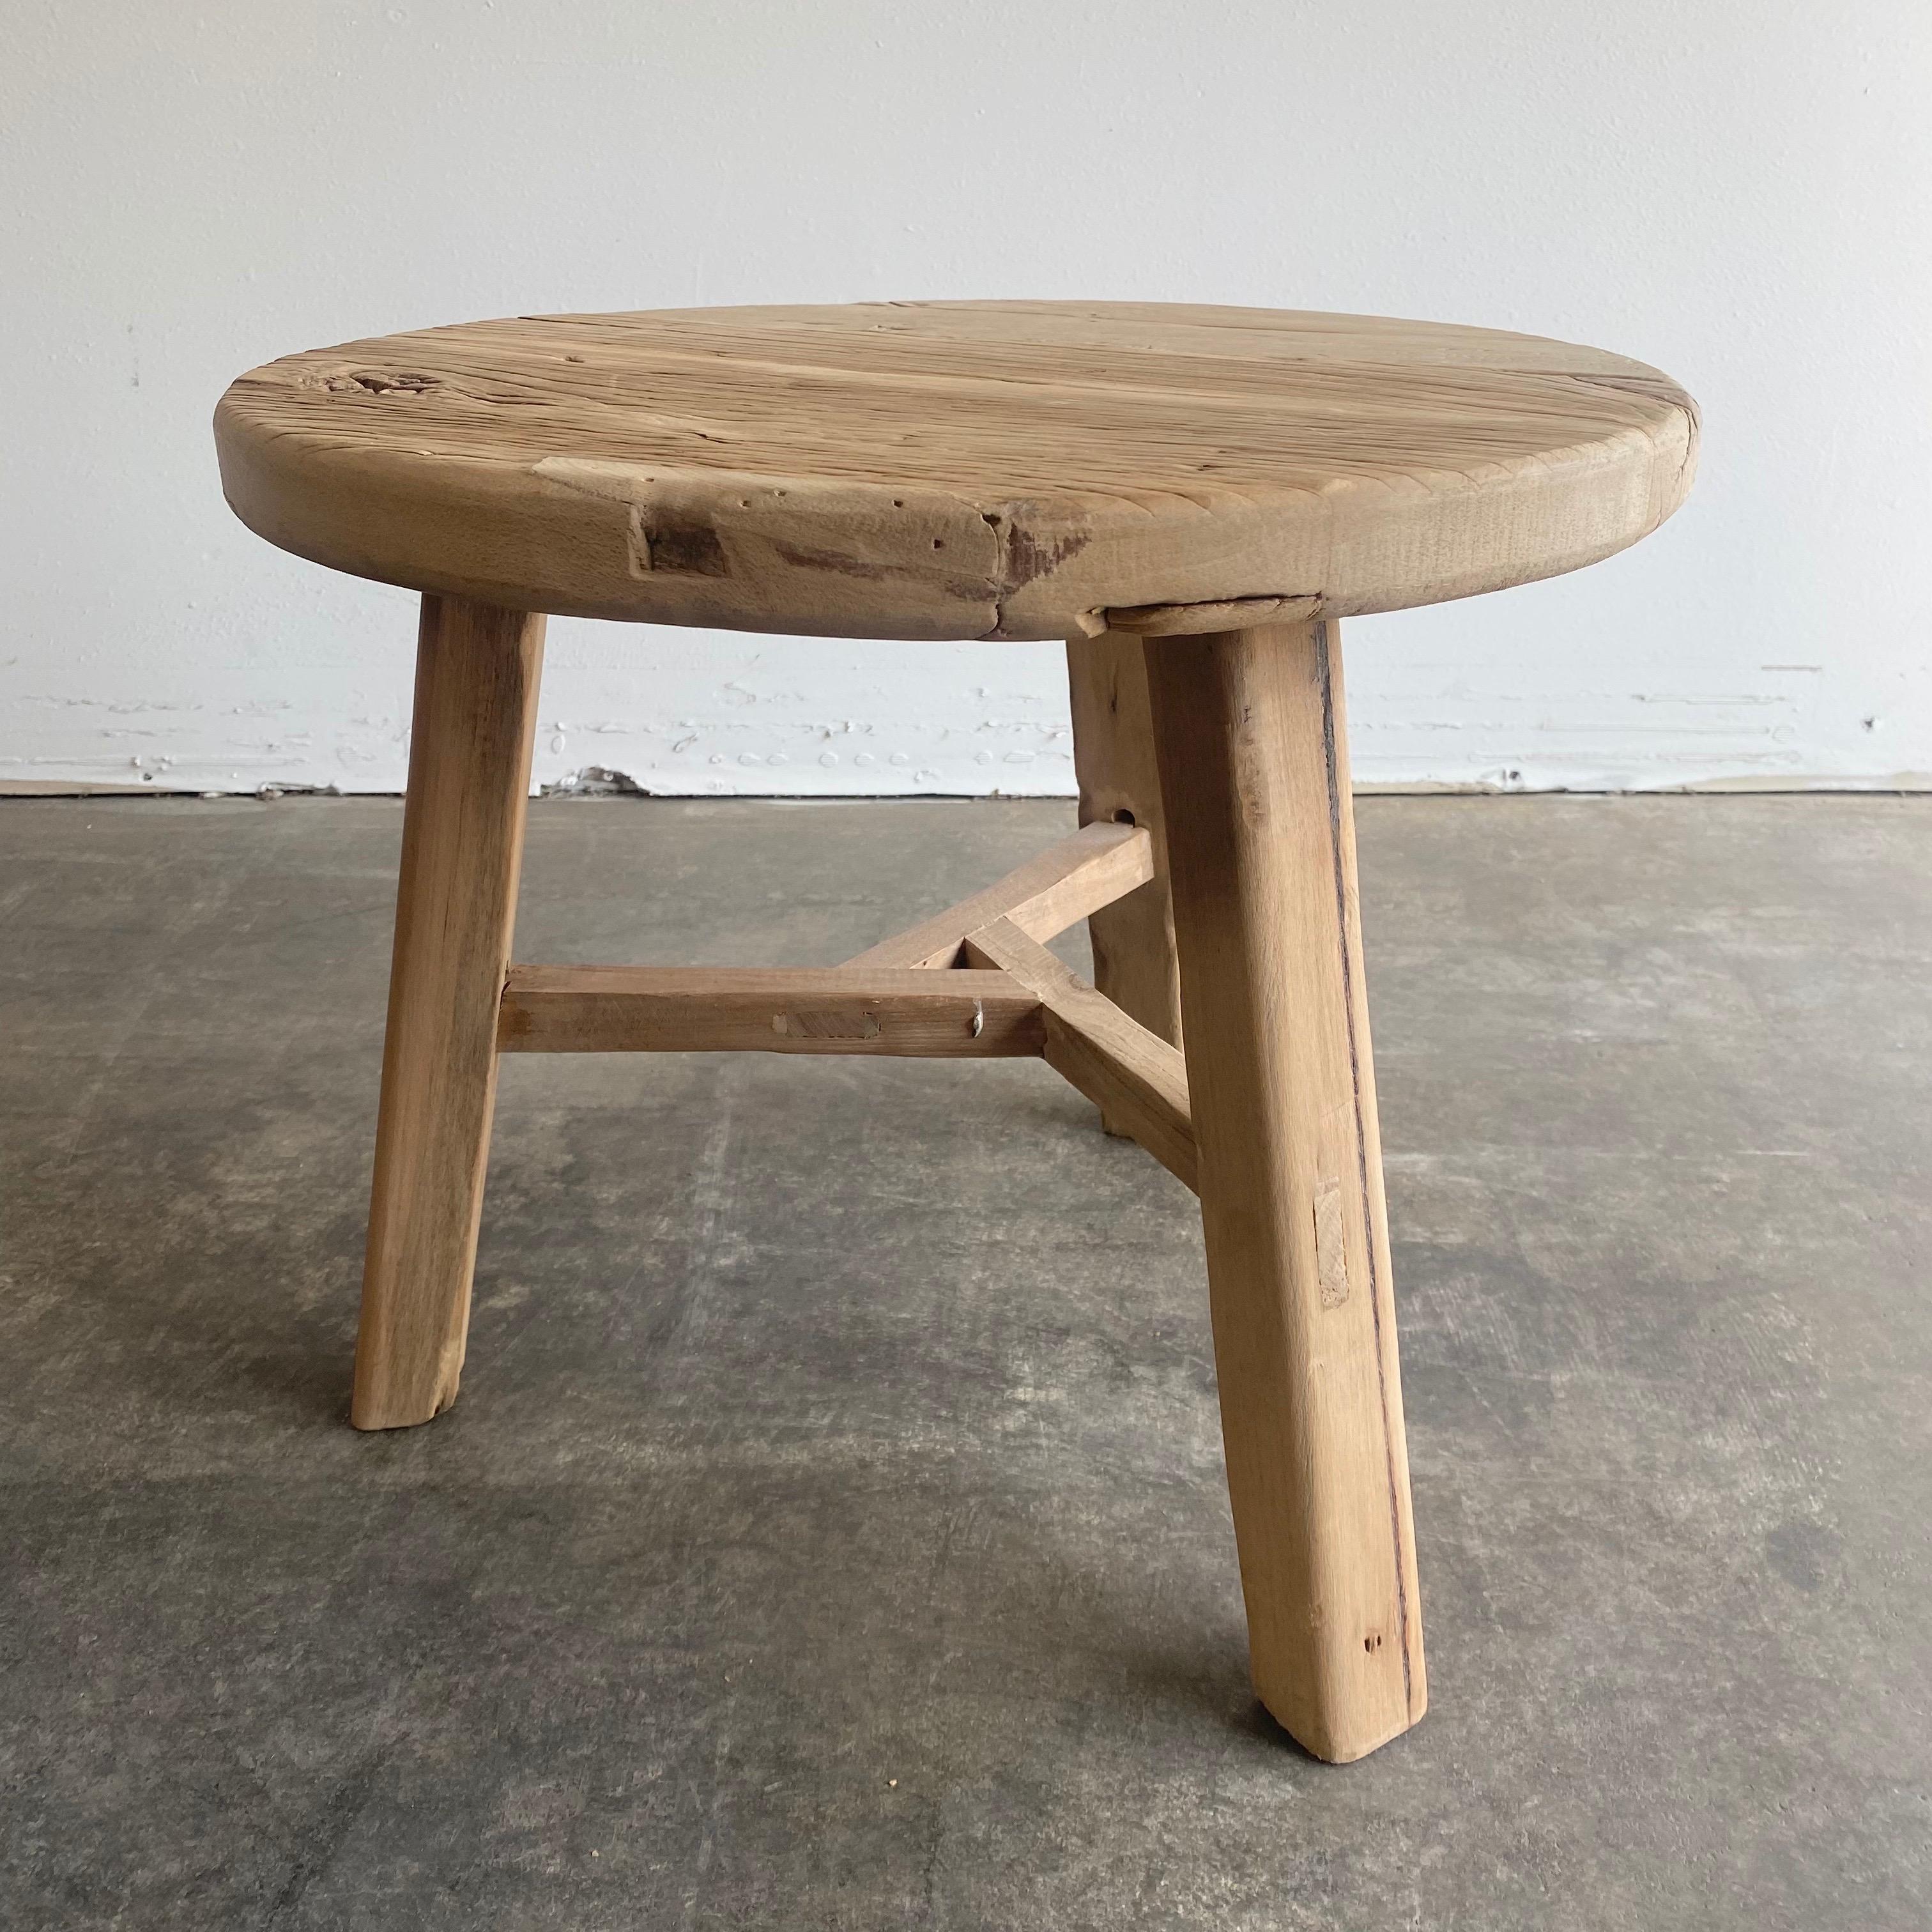 Table d'appoint ronde naturelle fabriquée à partir de bois d'orme récupéré. Finition naturelle brute, un miel chaud avec des tons gris dans le bois. Solide et robuste, une table d'appoint idéale à côté d'un lit, d'un canapé ou de chaises. Peut être